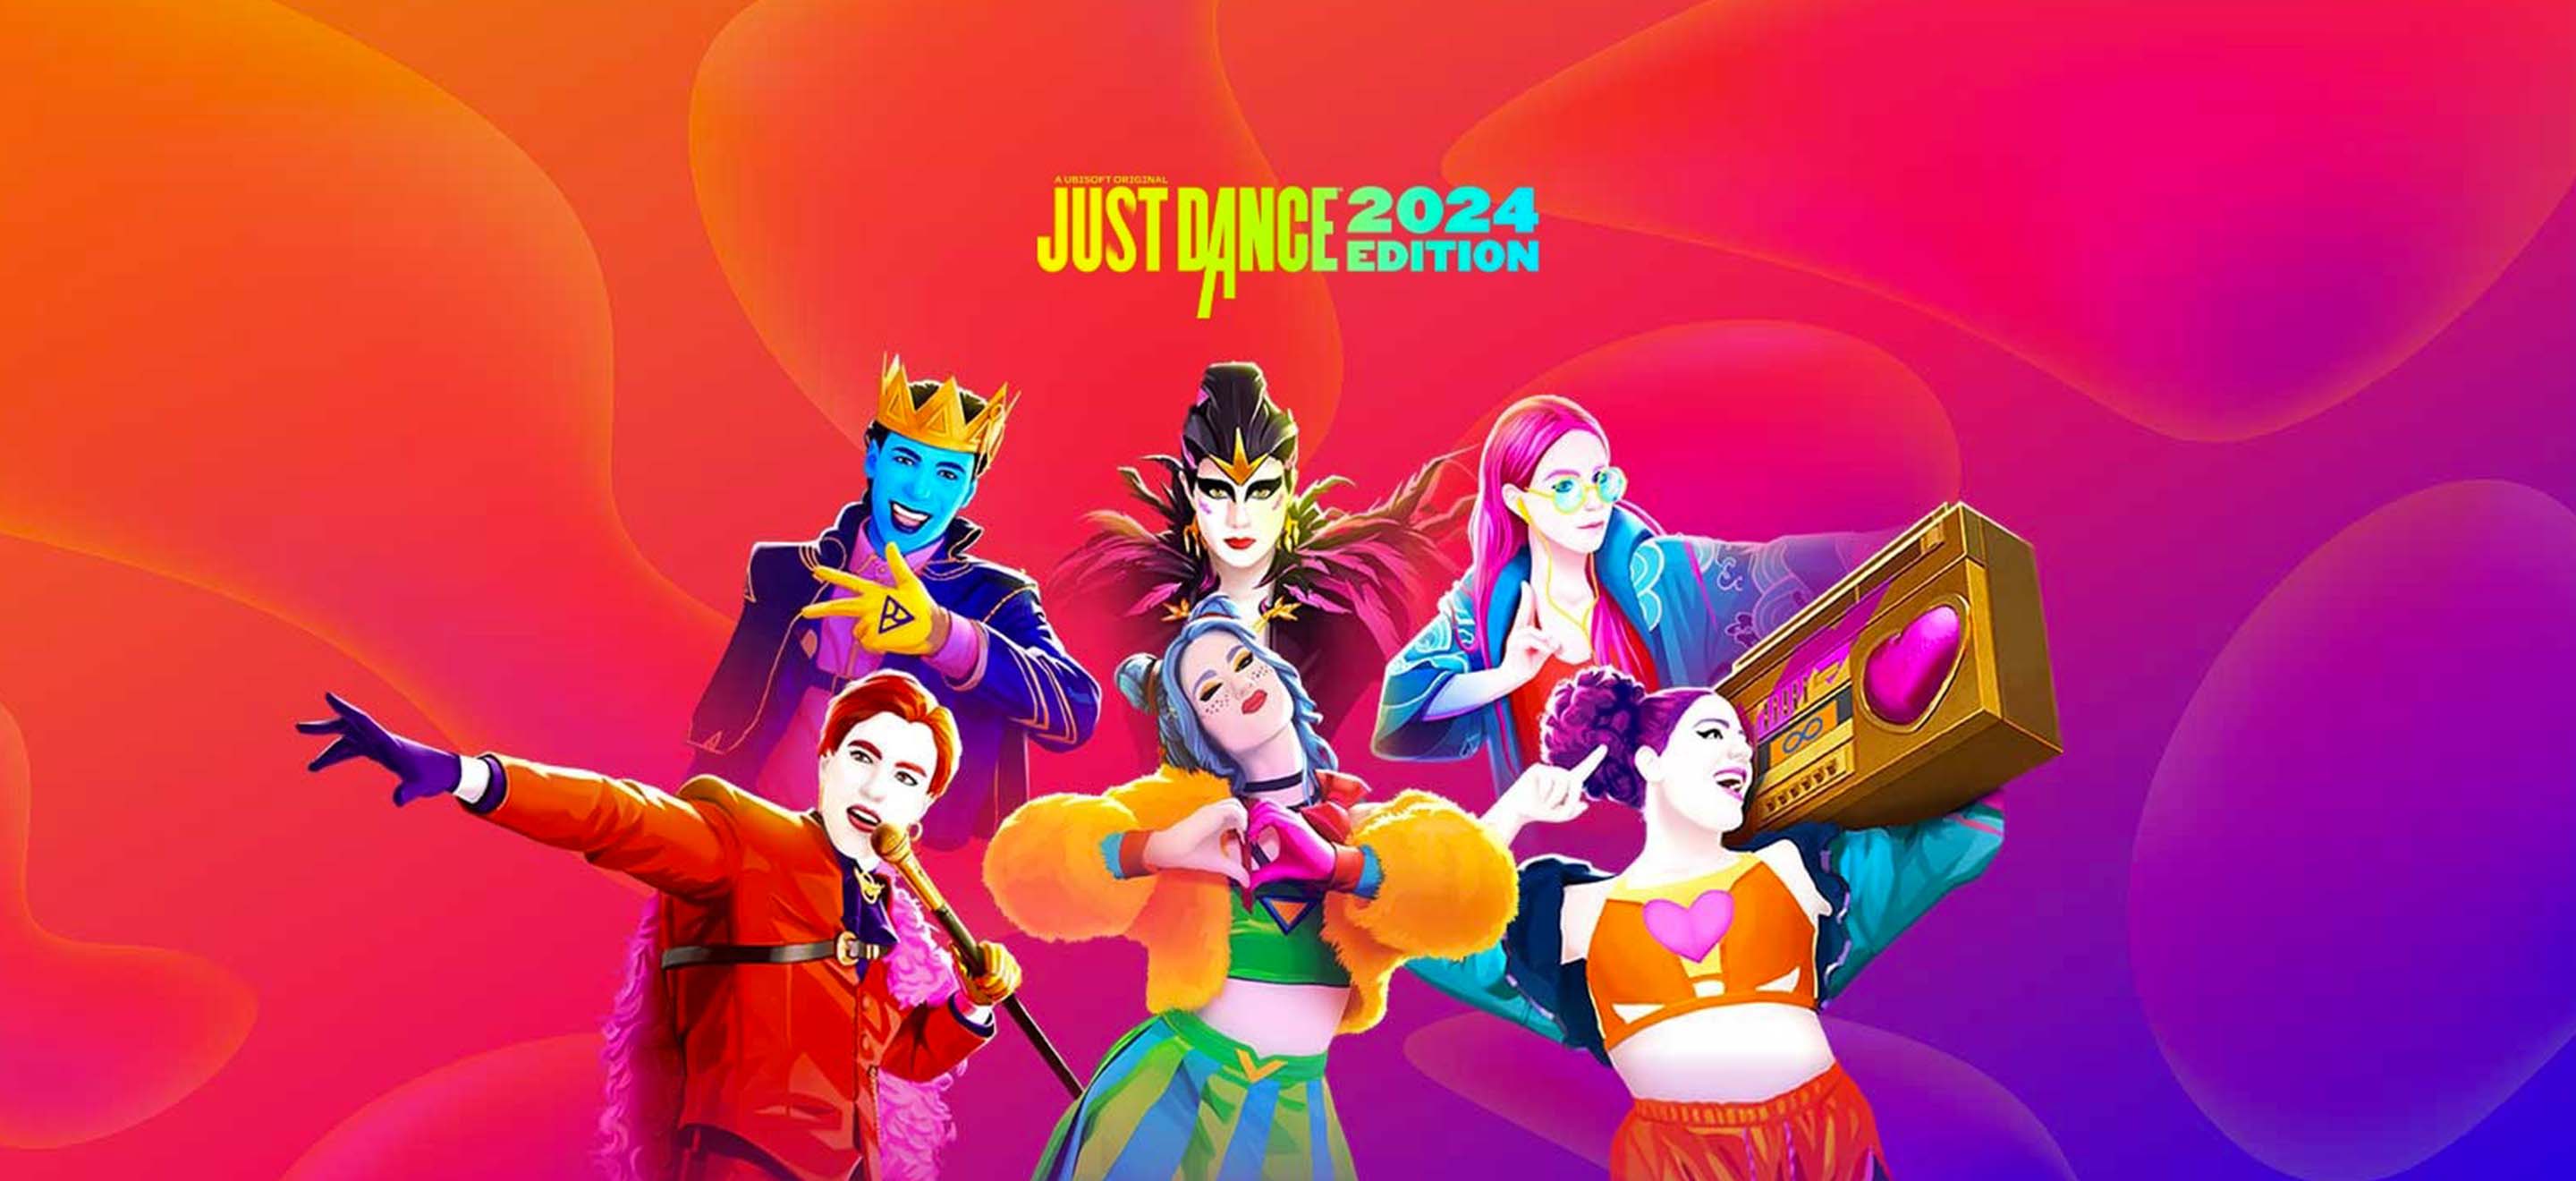 Les backstories des avatars de Just Dance 2024